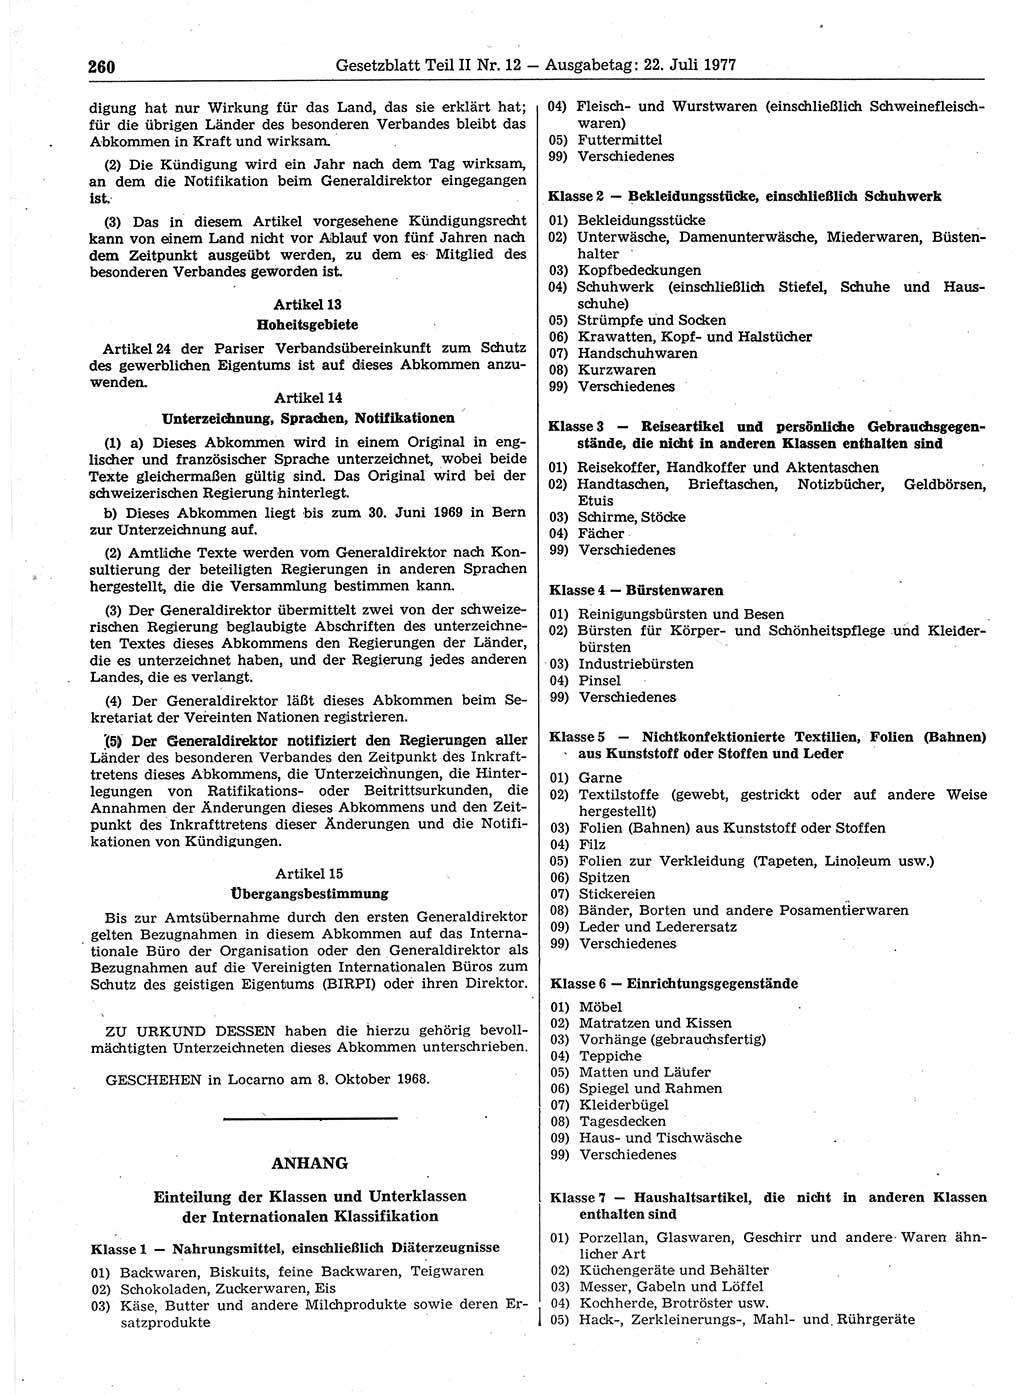 Gesetzblatt (GBl.) der Deutschen Demokratischen Republik (DDR) Teil ⅠⅠ 1977, Seite 260 (GBl. DDR ⅠⅠ 1977, S. 260)